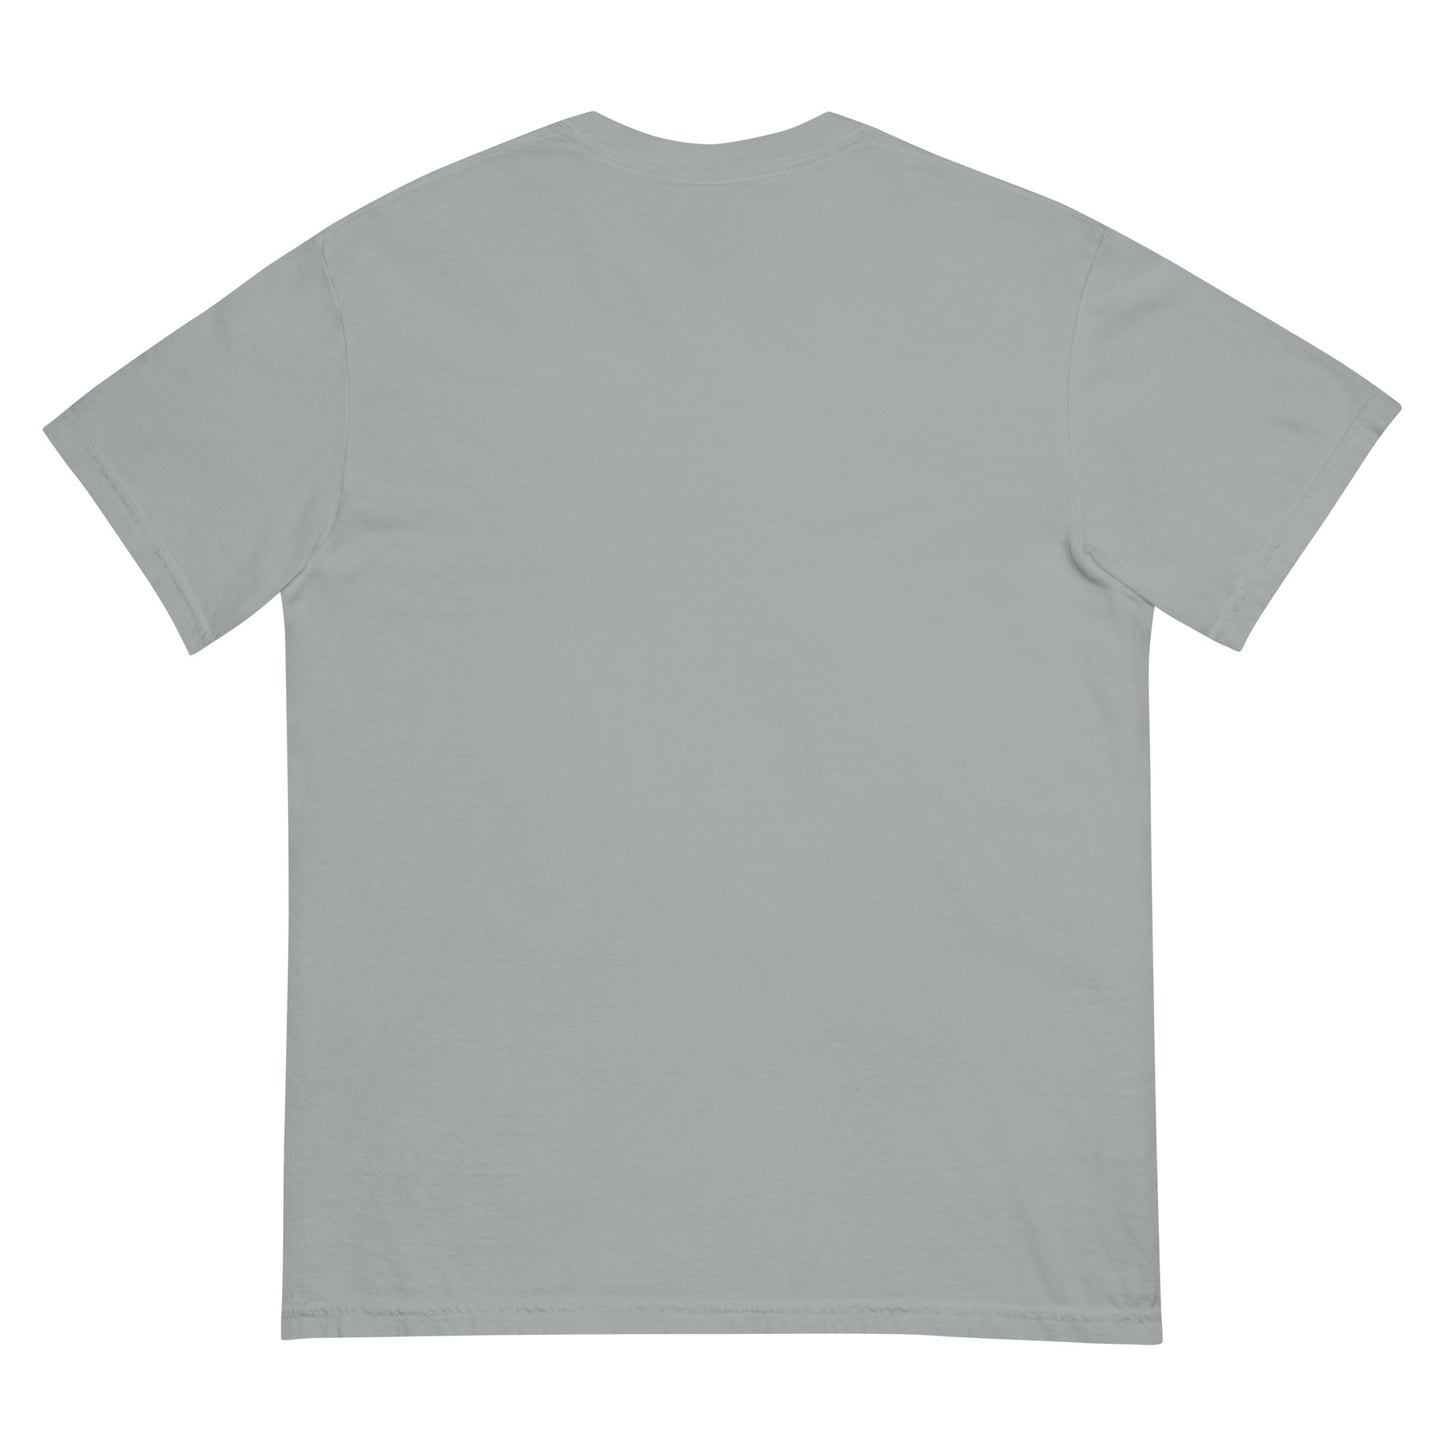 MPHS GRZZLS garment-dyed heavyweight t-shirt